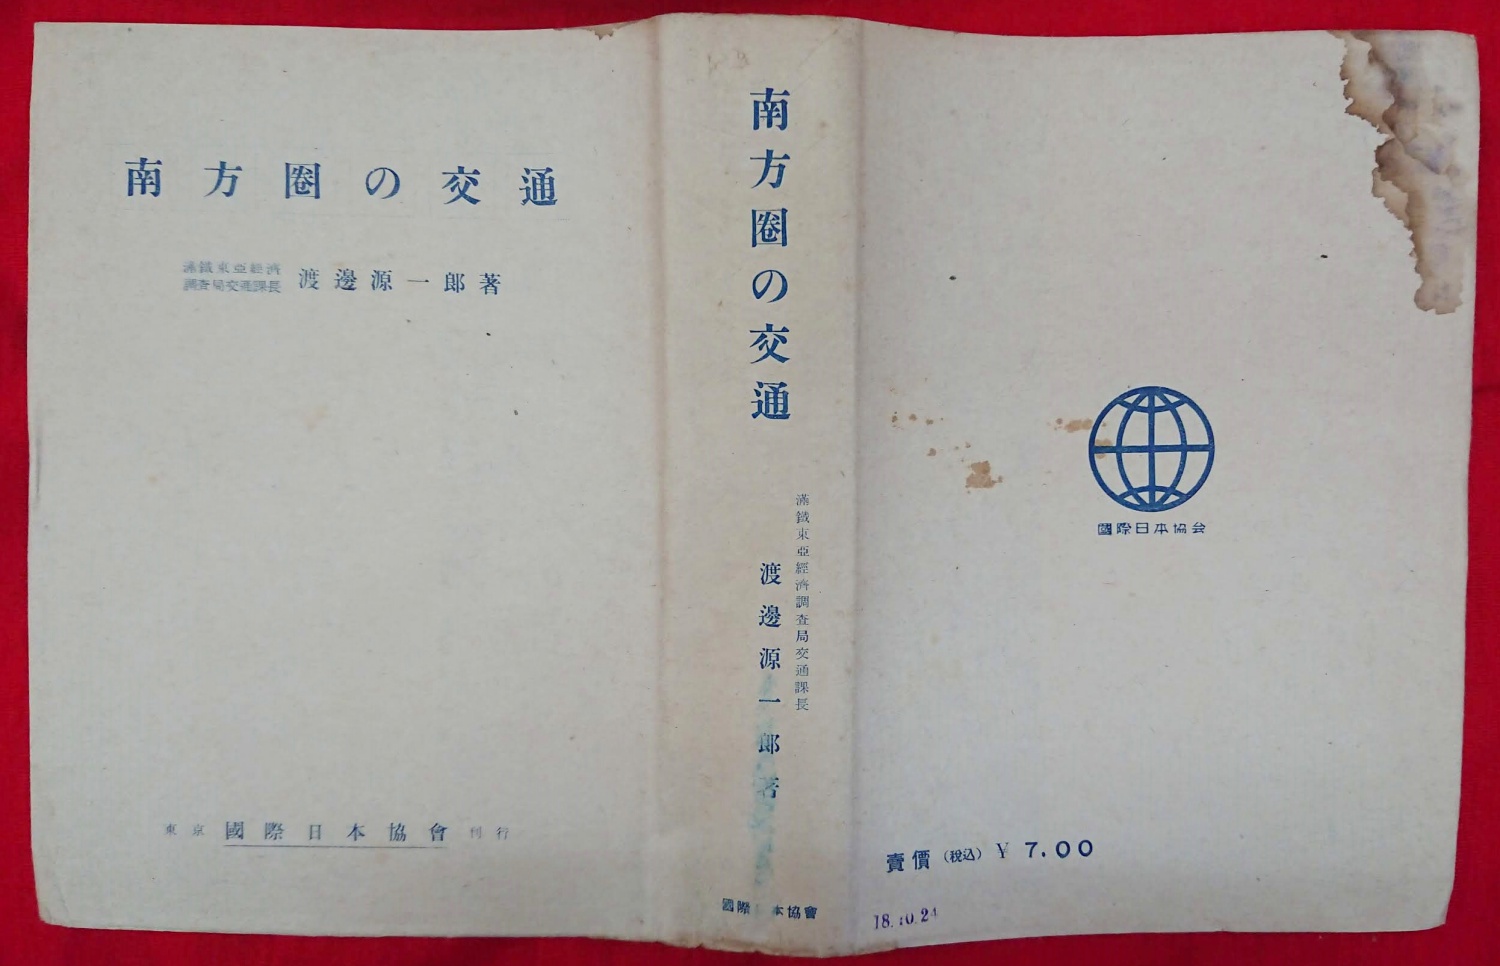 東洋建築の研究 上下2冊』など、中国関連、ちくま文庫、アナキズム関連